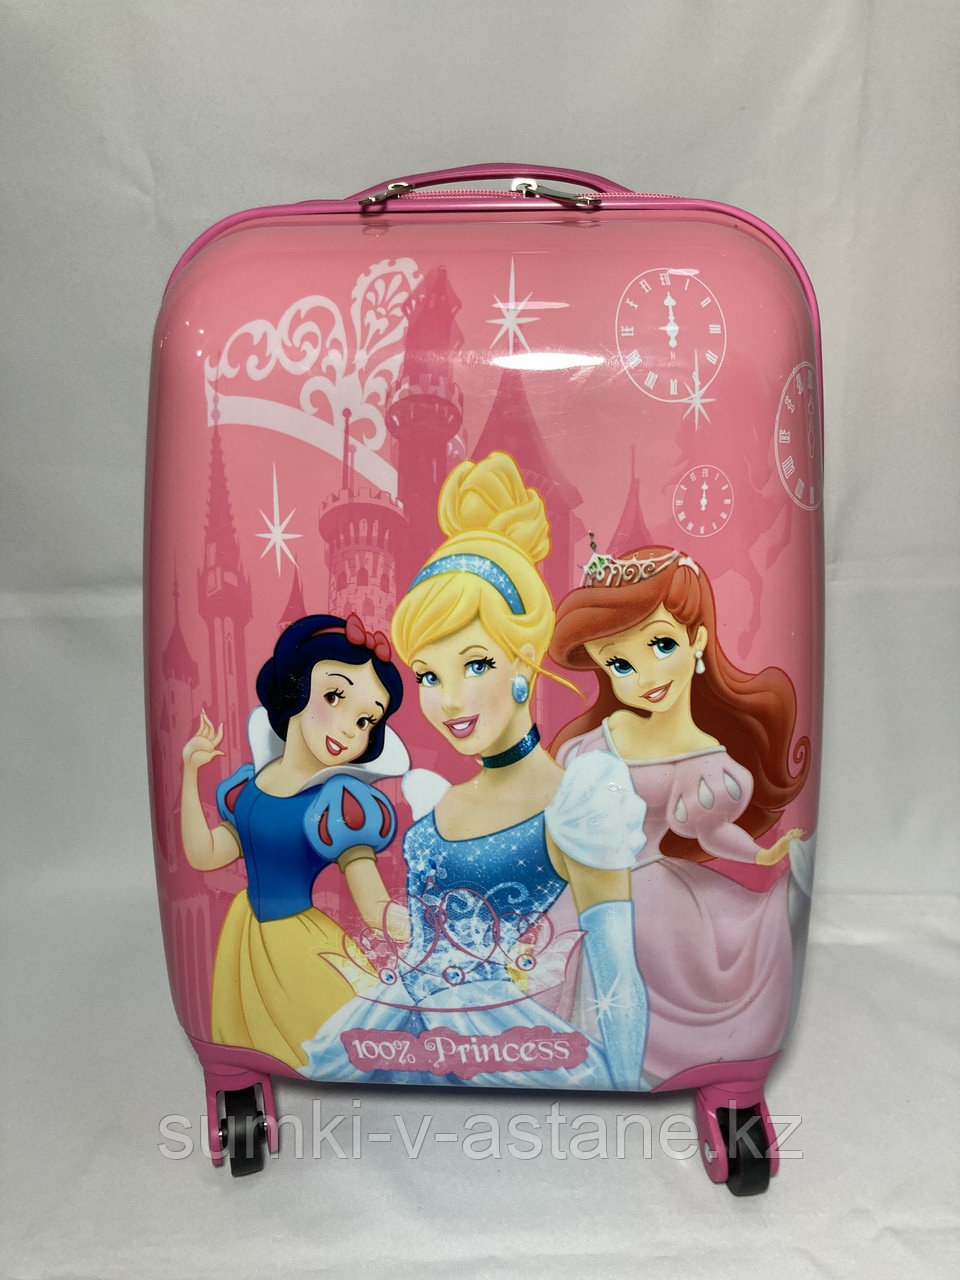 Детский пластиковый чемодан на 4-х колесах, для девочек 5-9 лет. Высота 46 см, ширина 30 см, глубина 22 см.